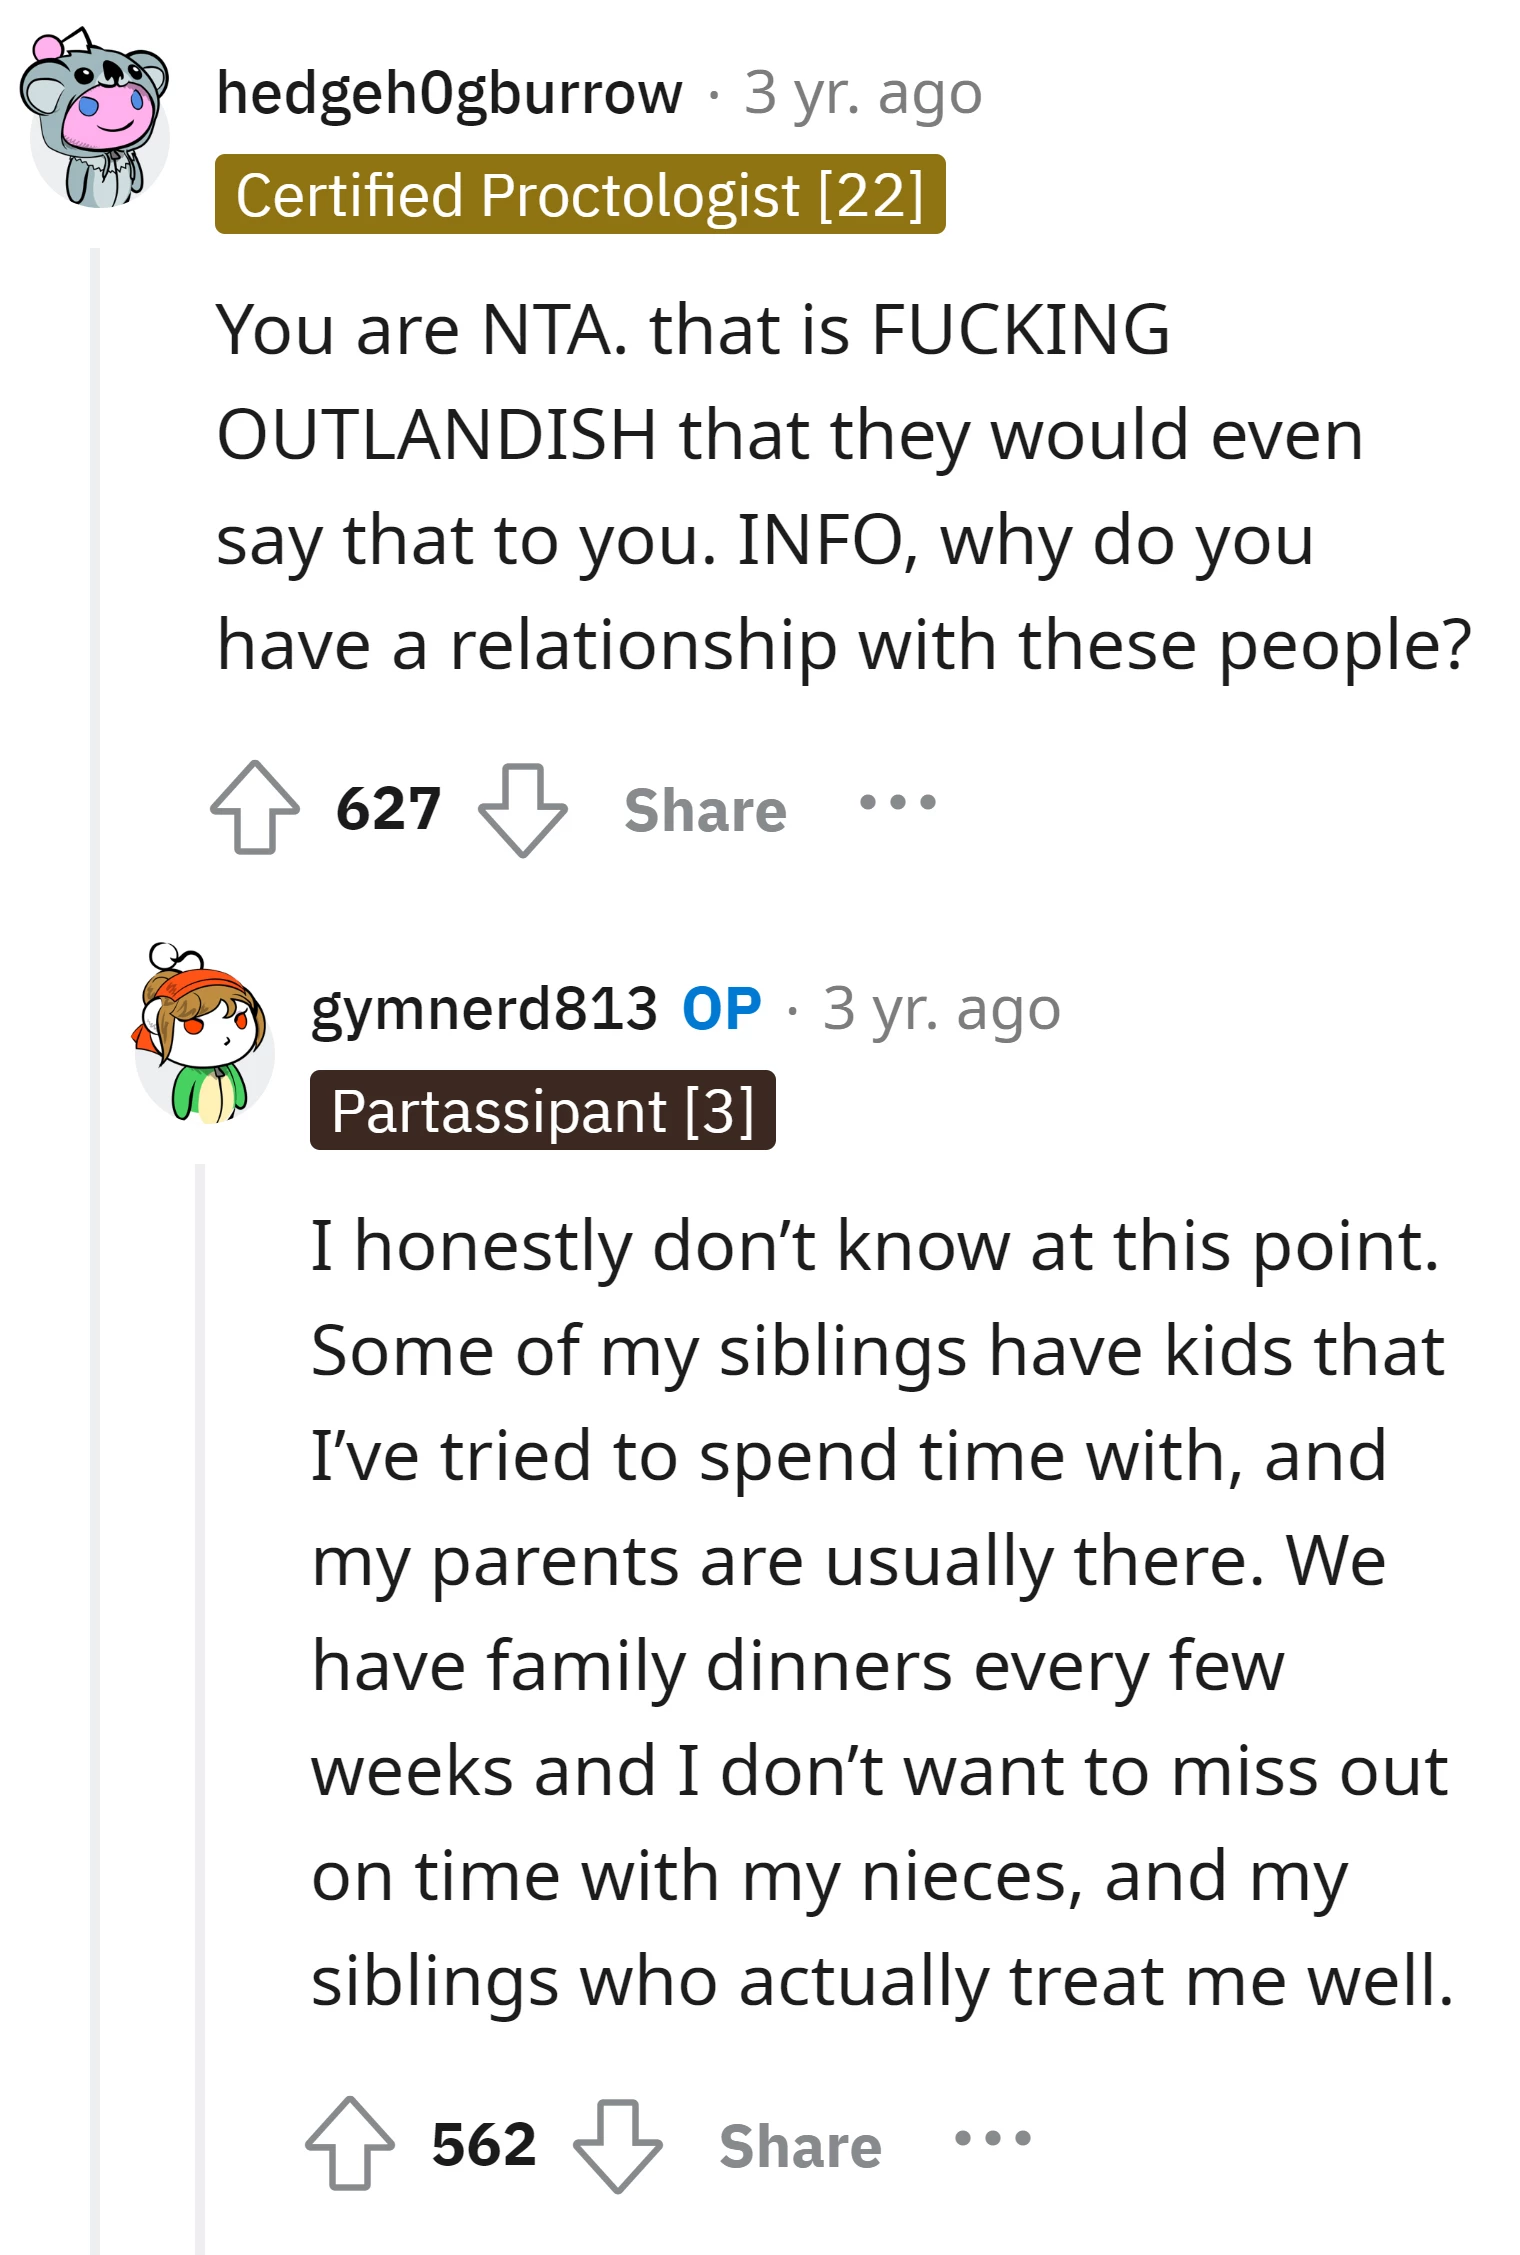 The parents' behavior is outrageous